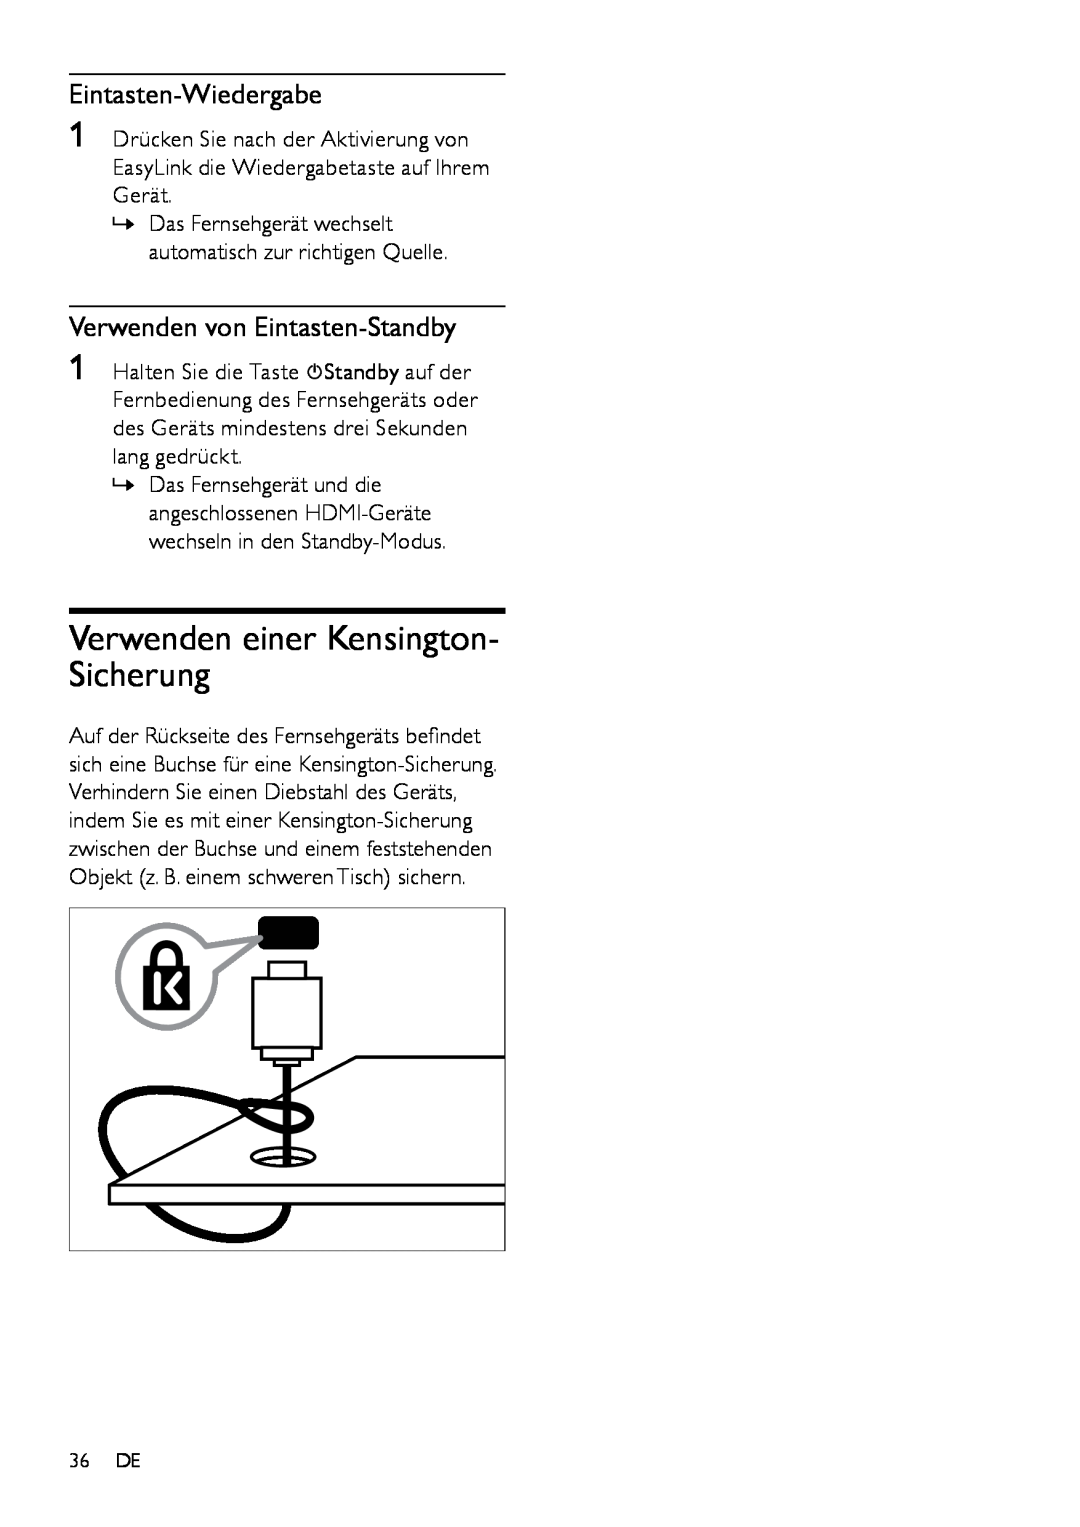 Philips 19PFL3404H/12 manual Verwenden einer Kensington- Sicherung, Eintasten-Wiedergabe, Verwenden von Eintasten-Standby 